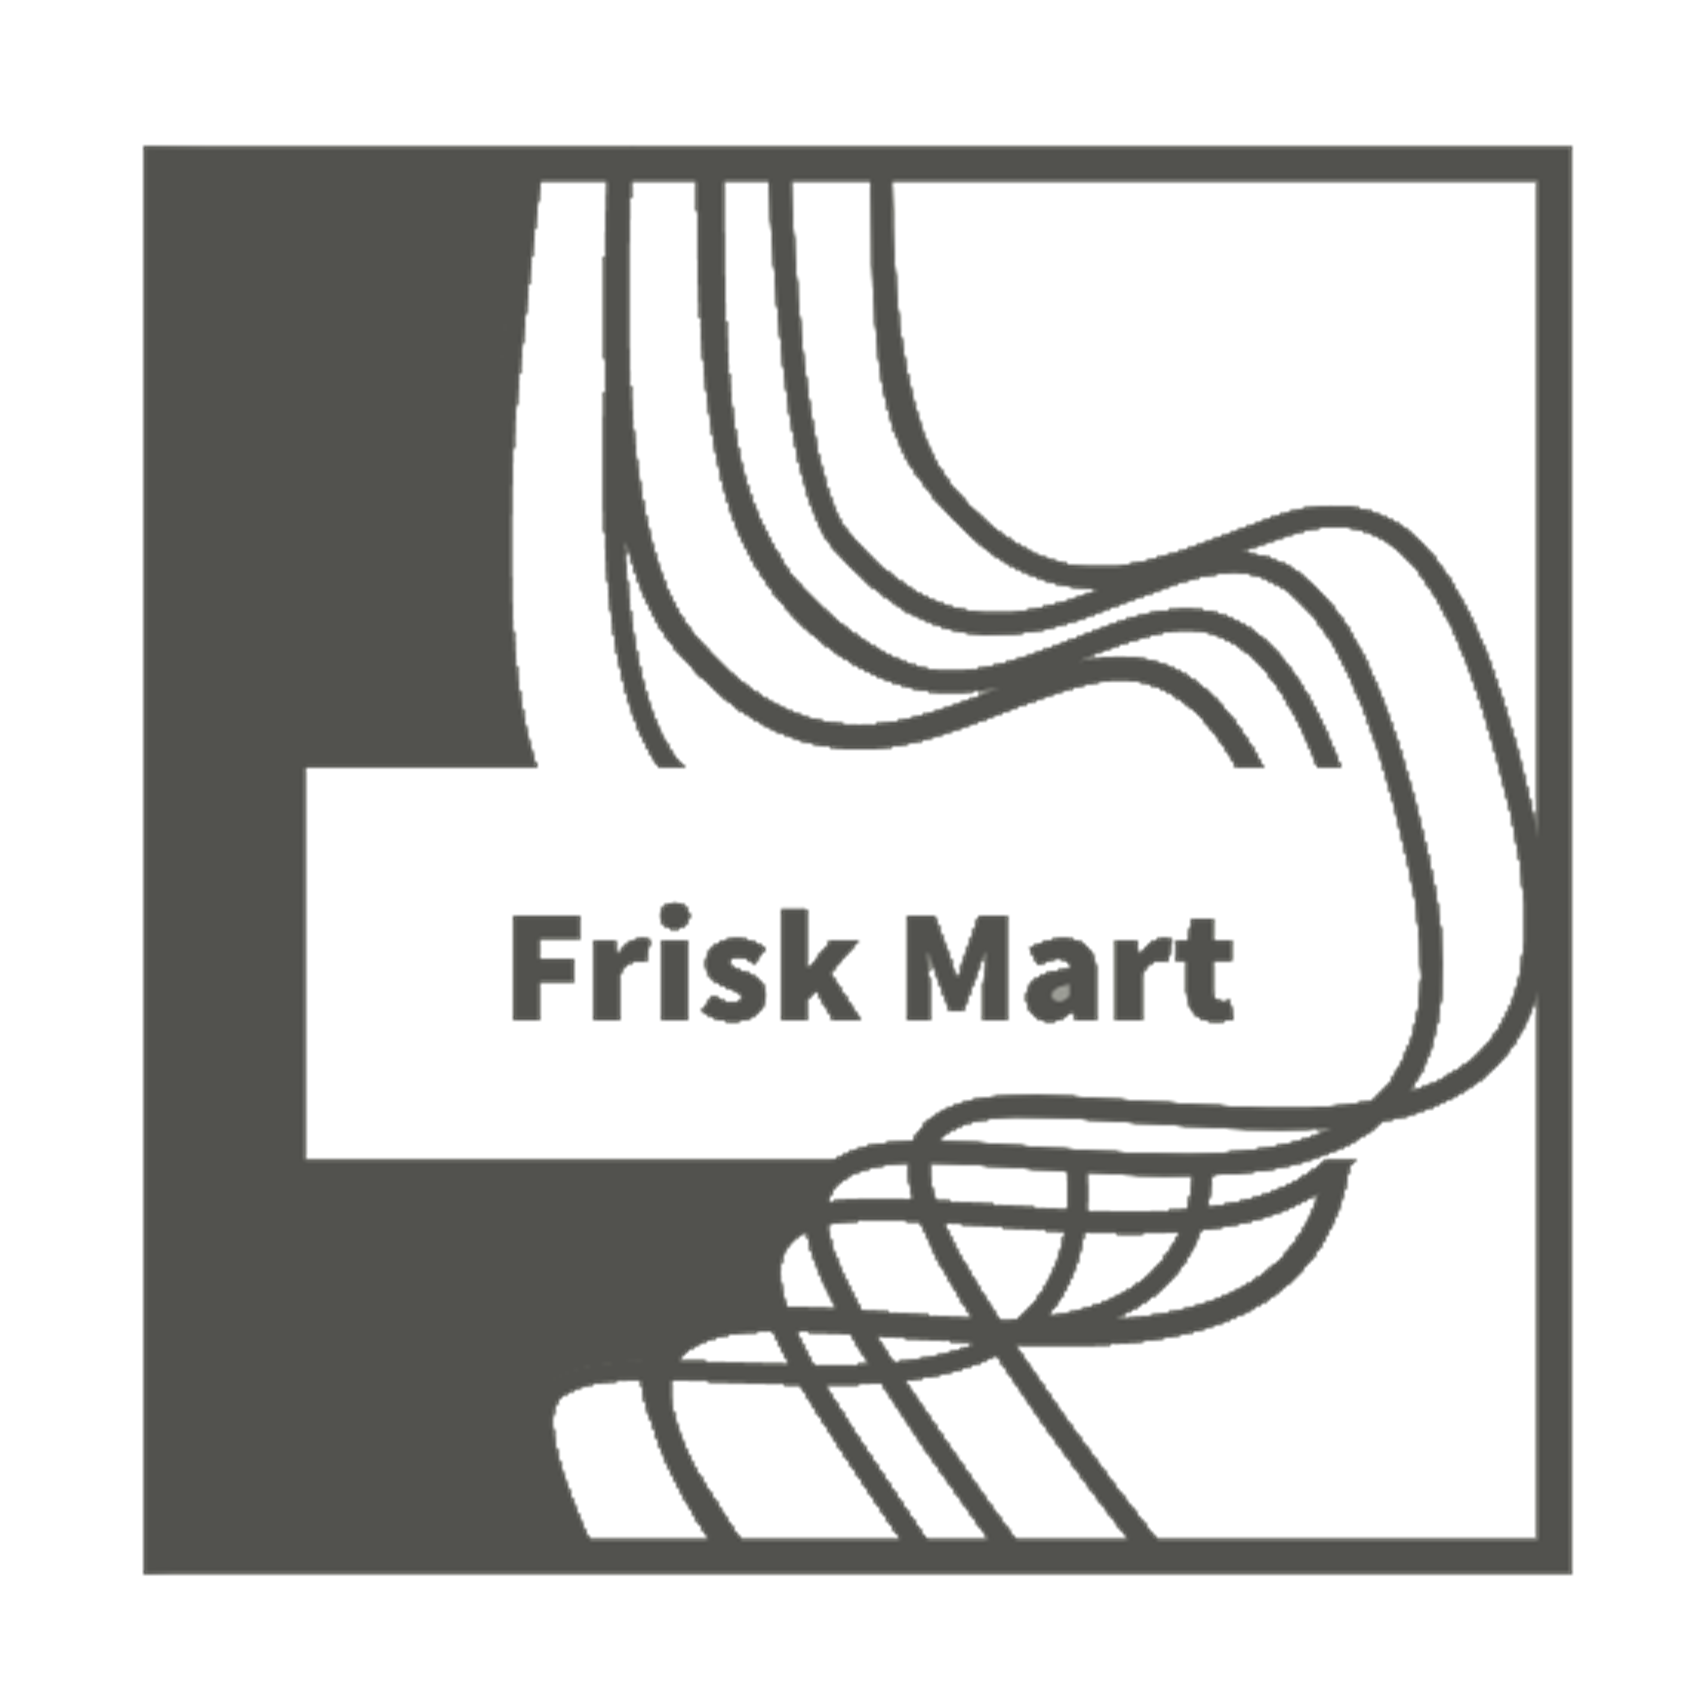 Frisk Mart- Your Supermarket